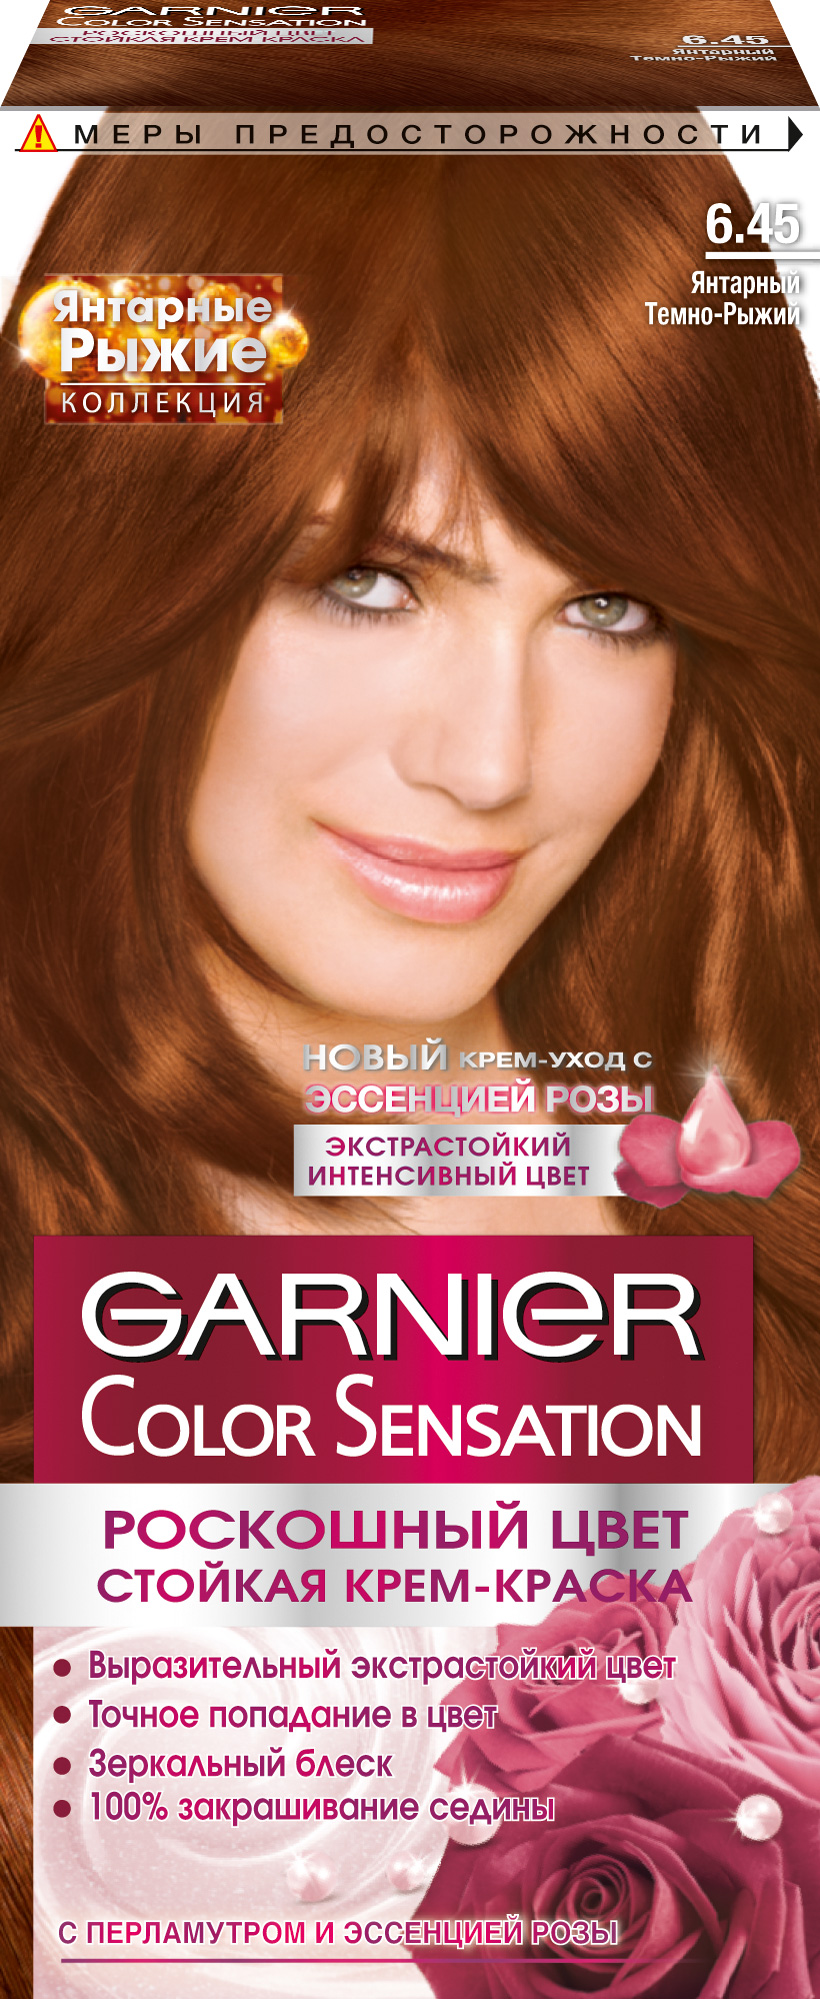 Купить Краска для волос Garnier Color Sensation 6.45 Янтарный темно-рыжий